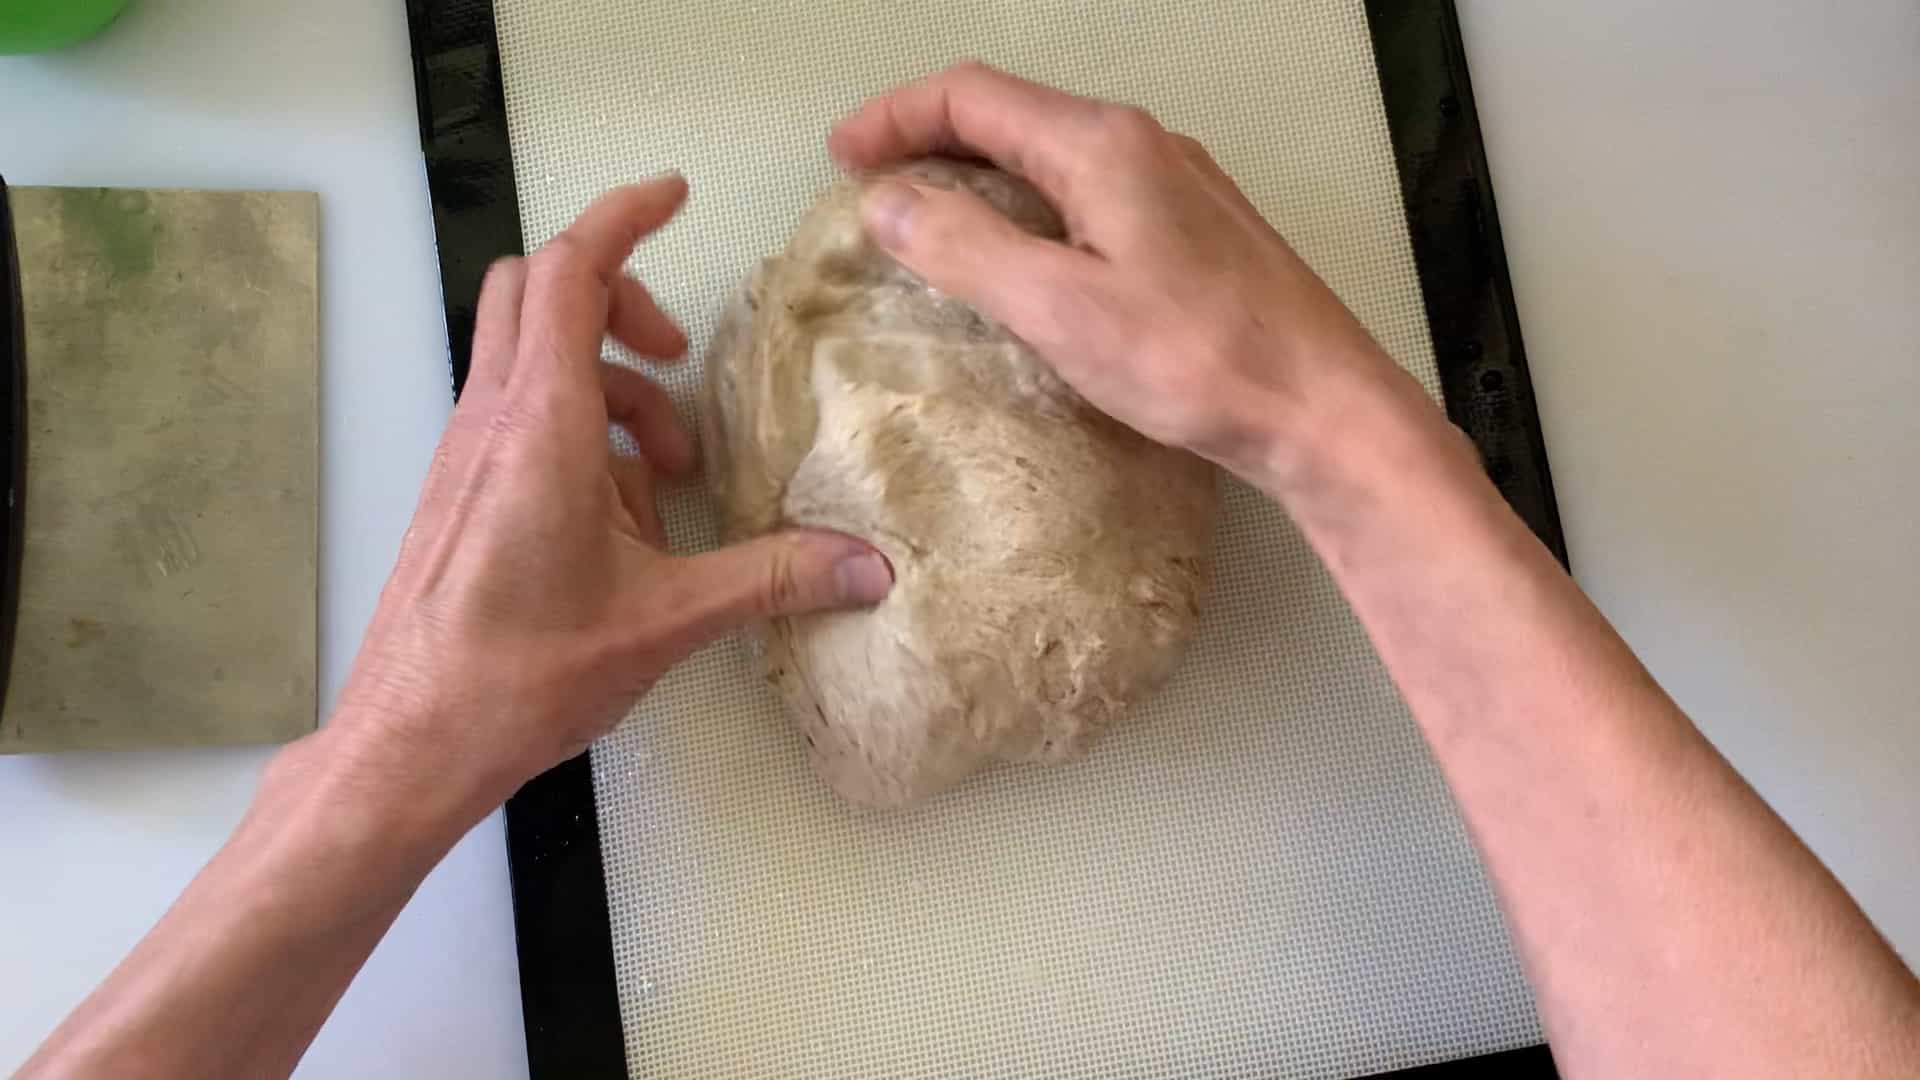 shaping dough into a ball.